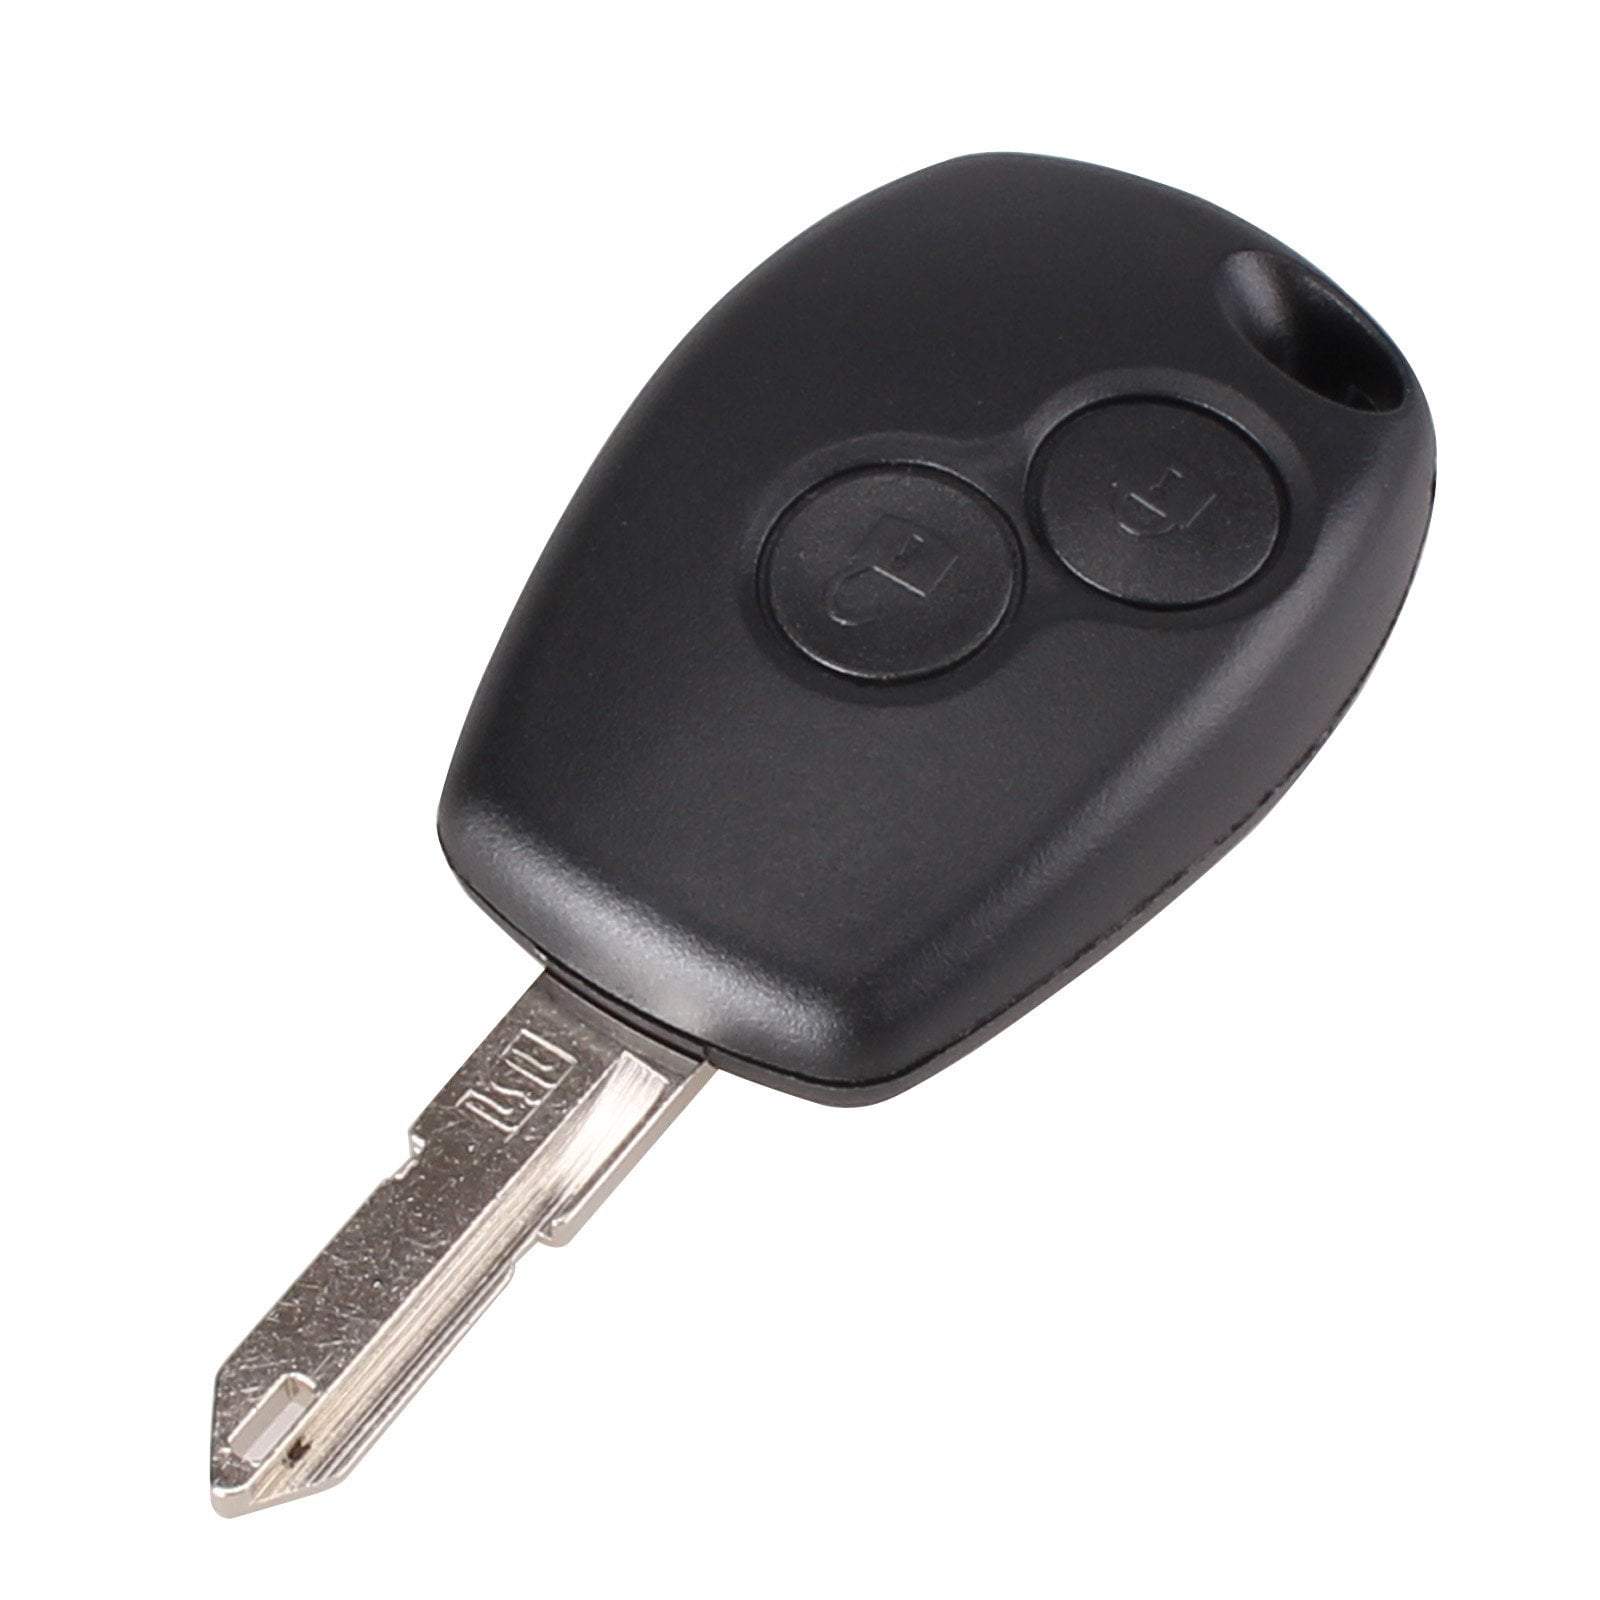 Fekete színű, 2 gombos Renault kulcs, kulcsház.